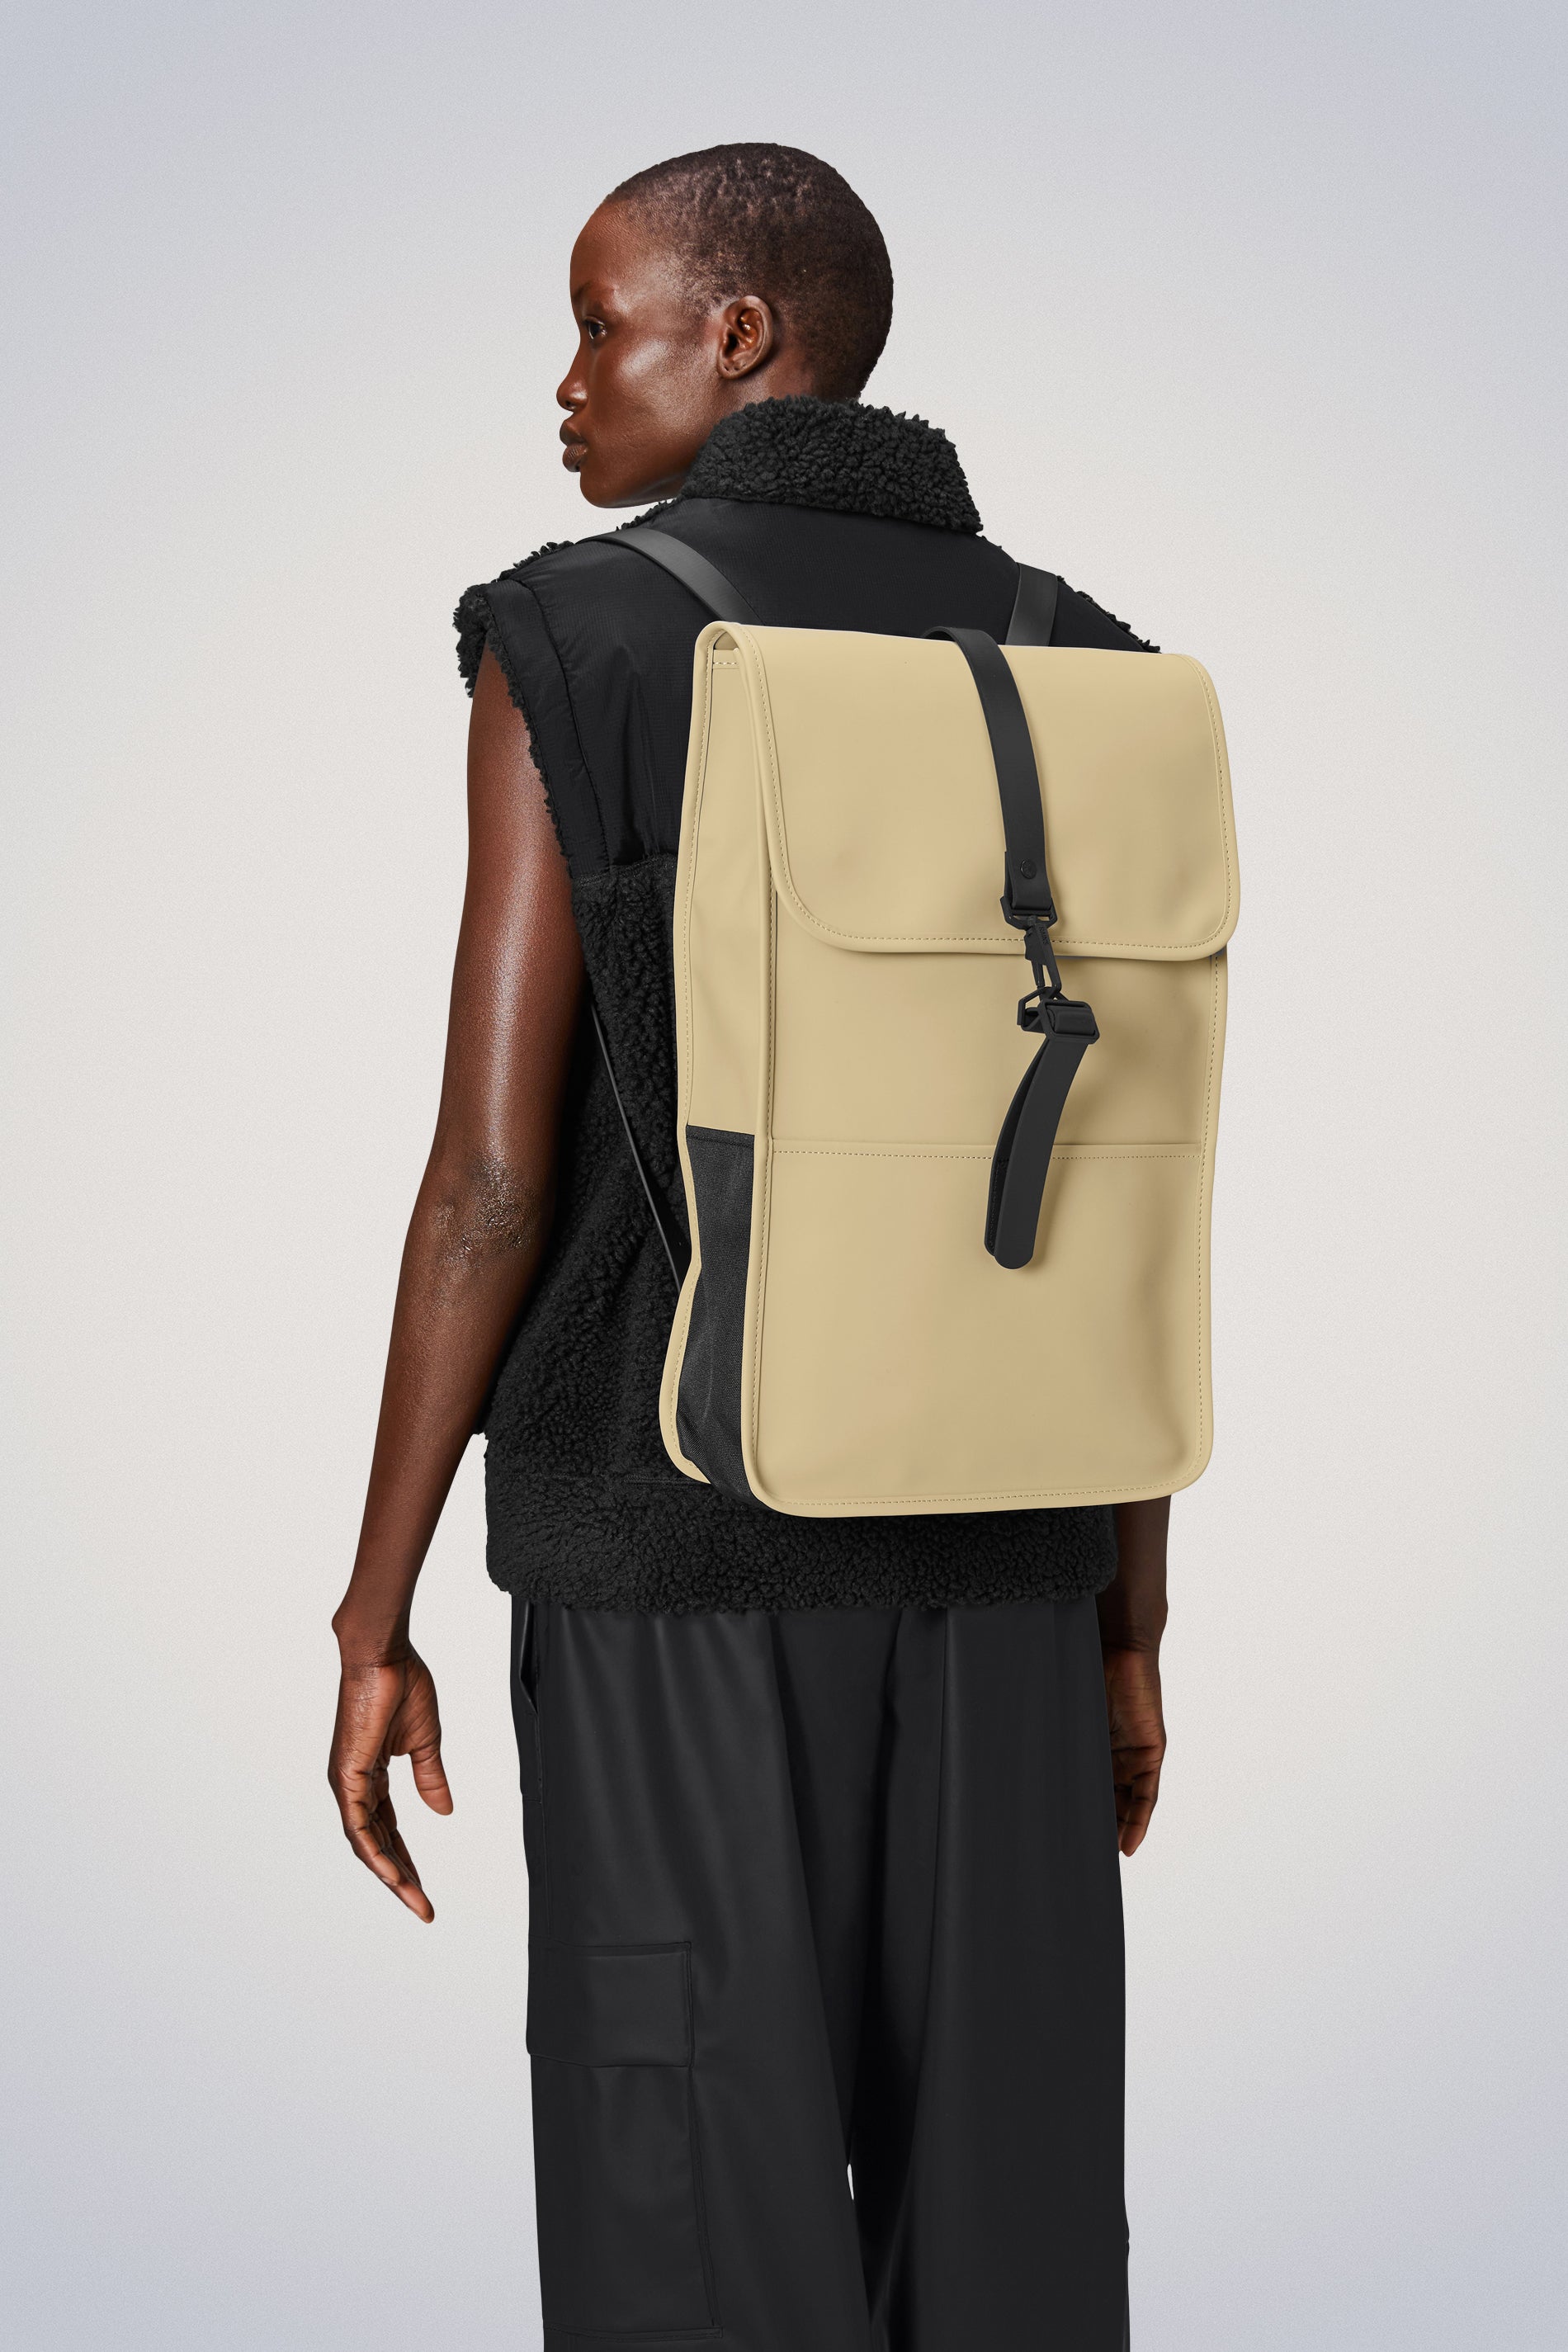 Waterproof Backpack | Buy Waterproof Rucksack | Rains